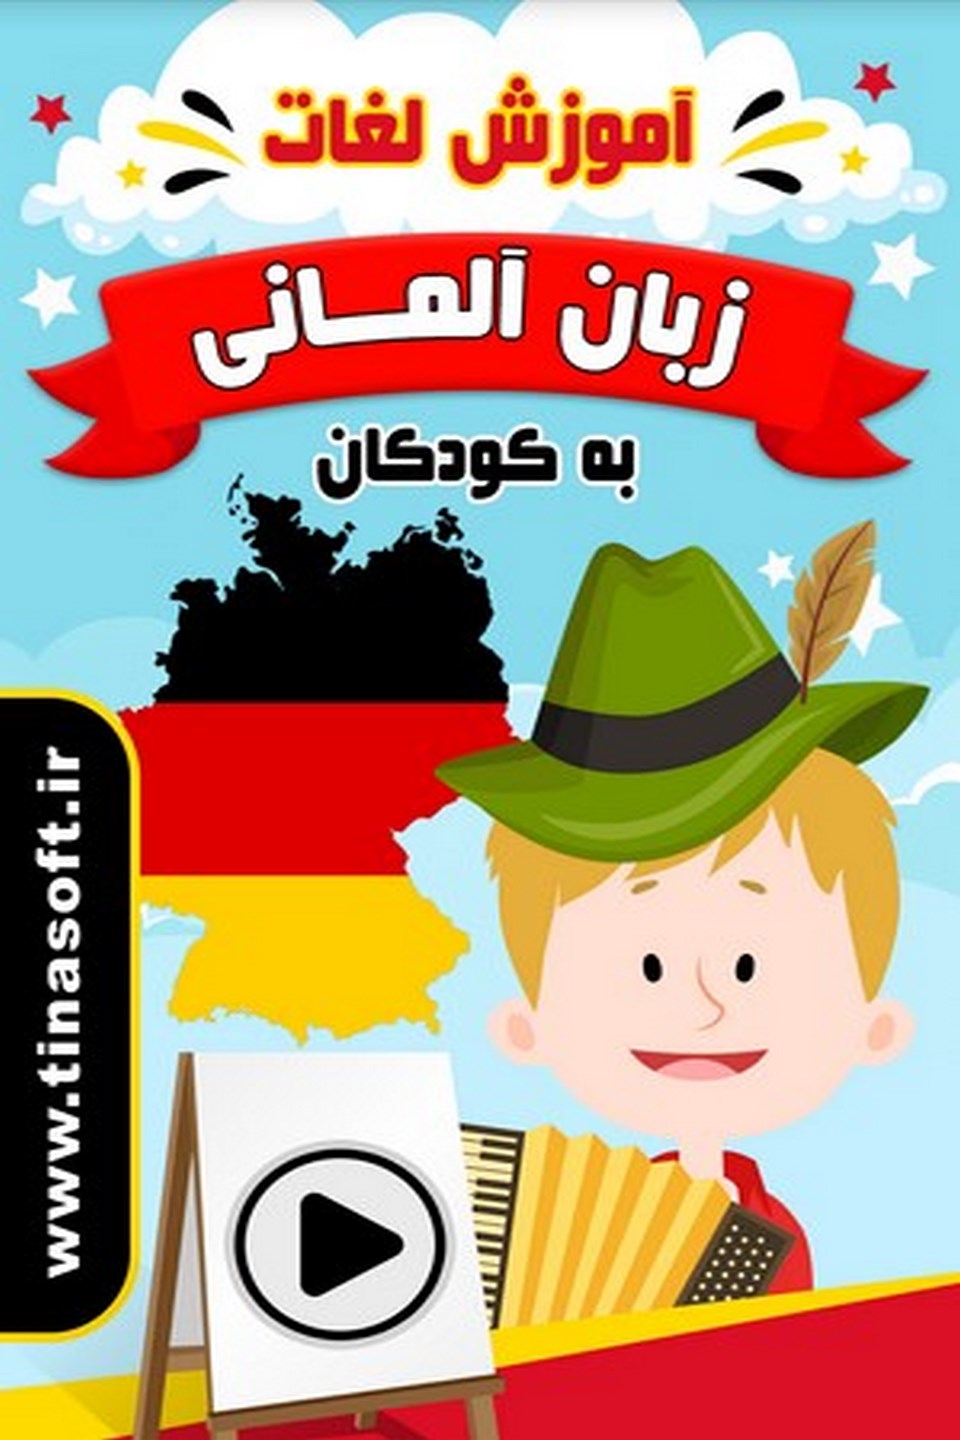 آموزش لغات زبان آلمانی به کودکان